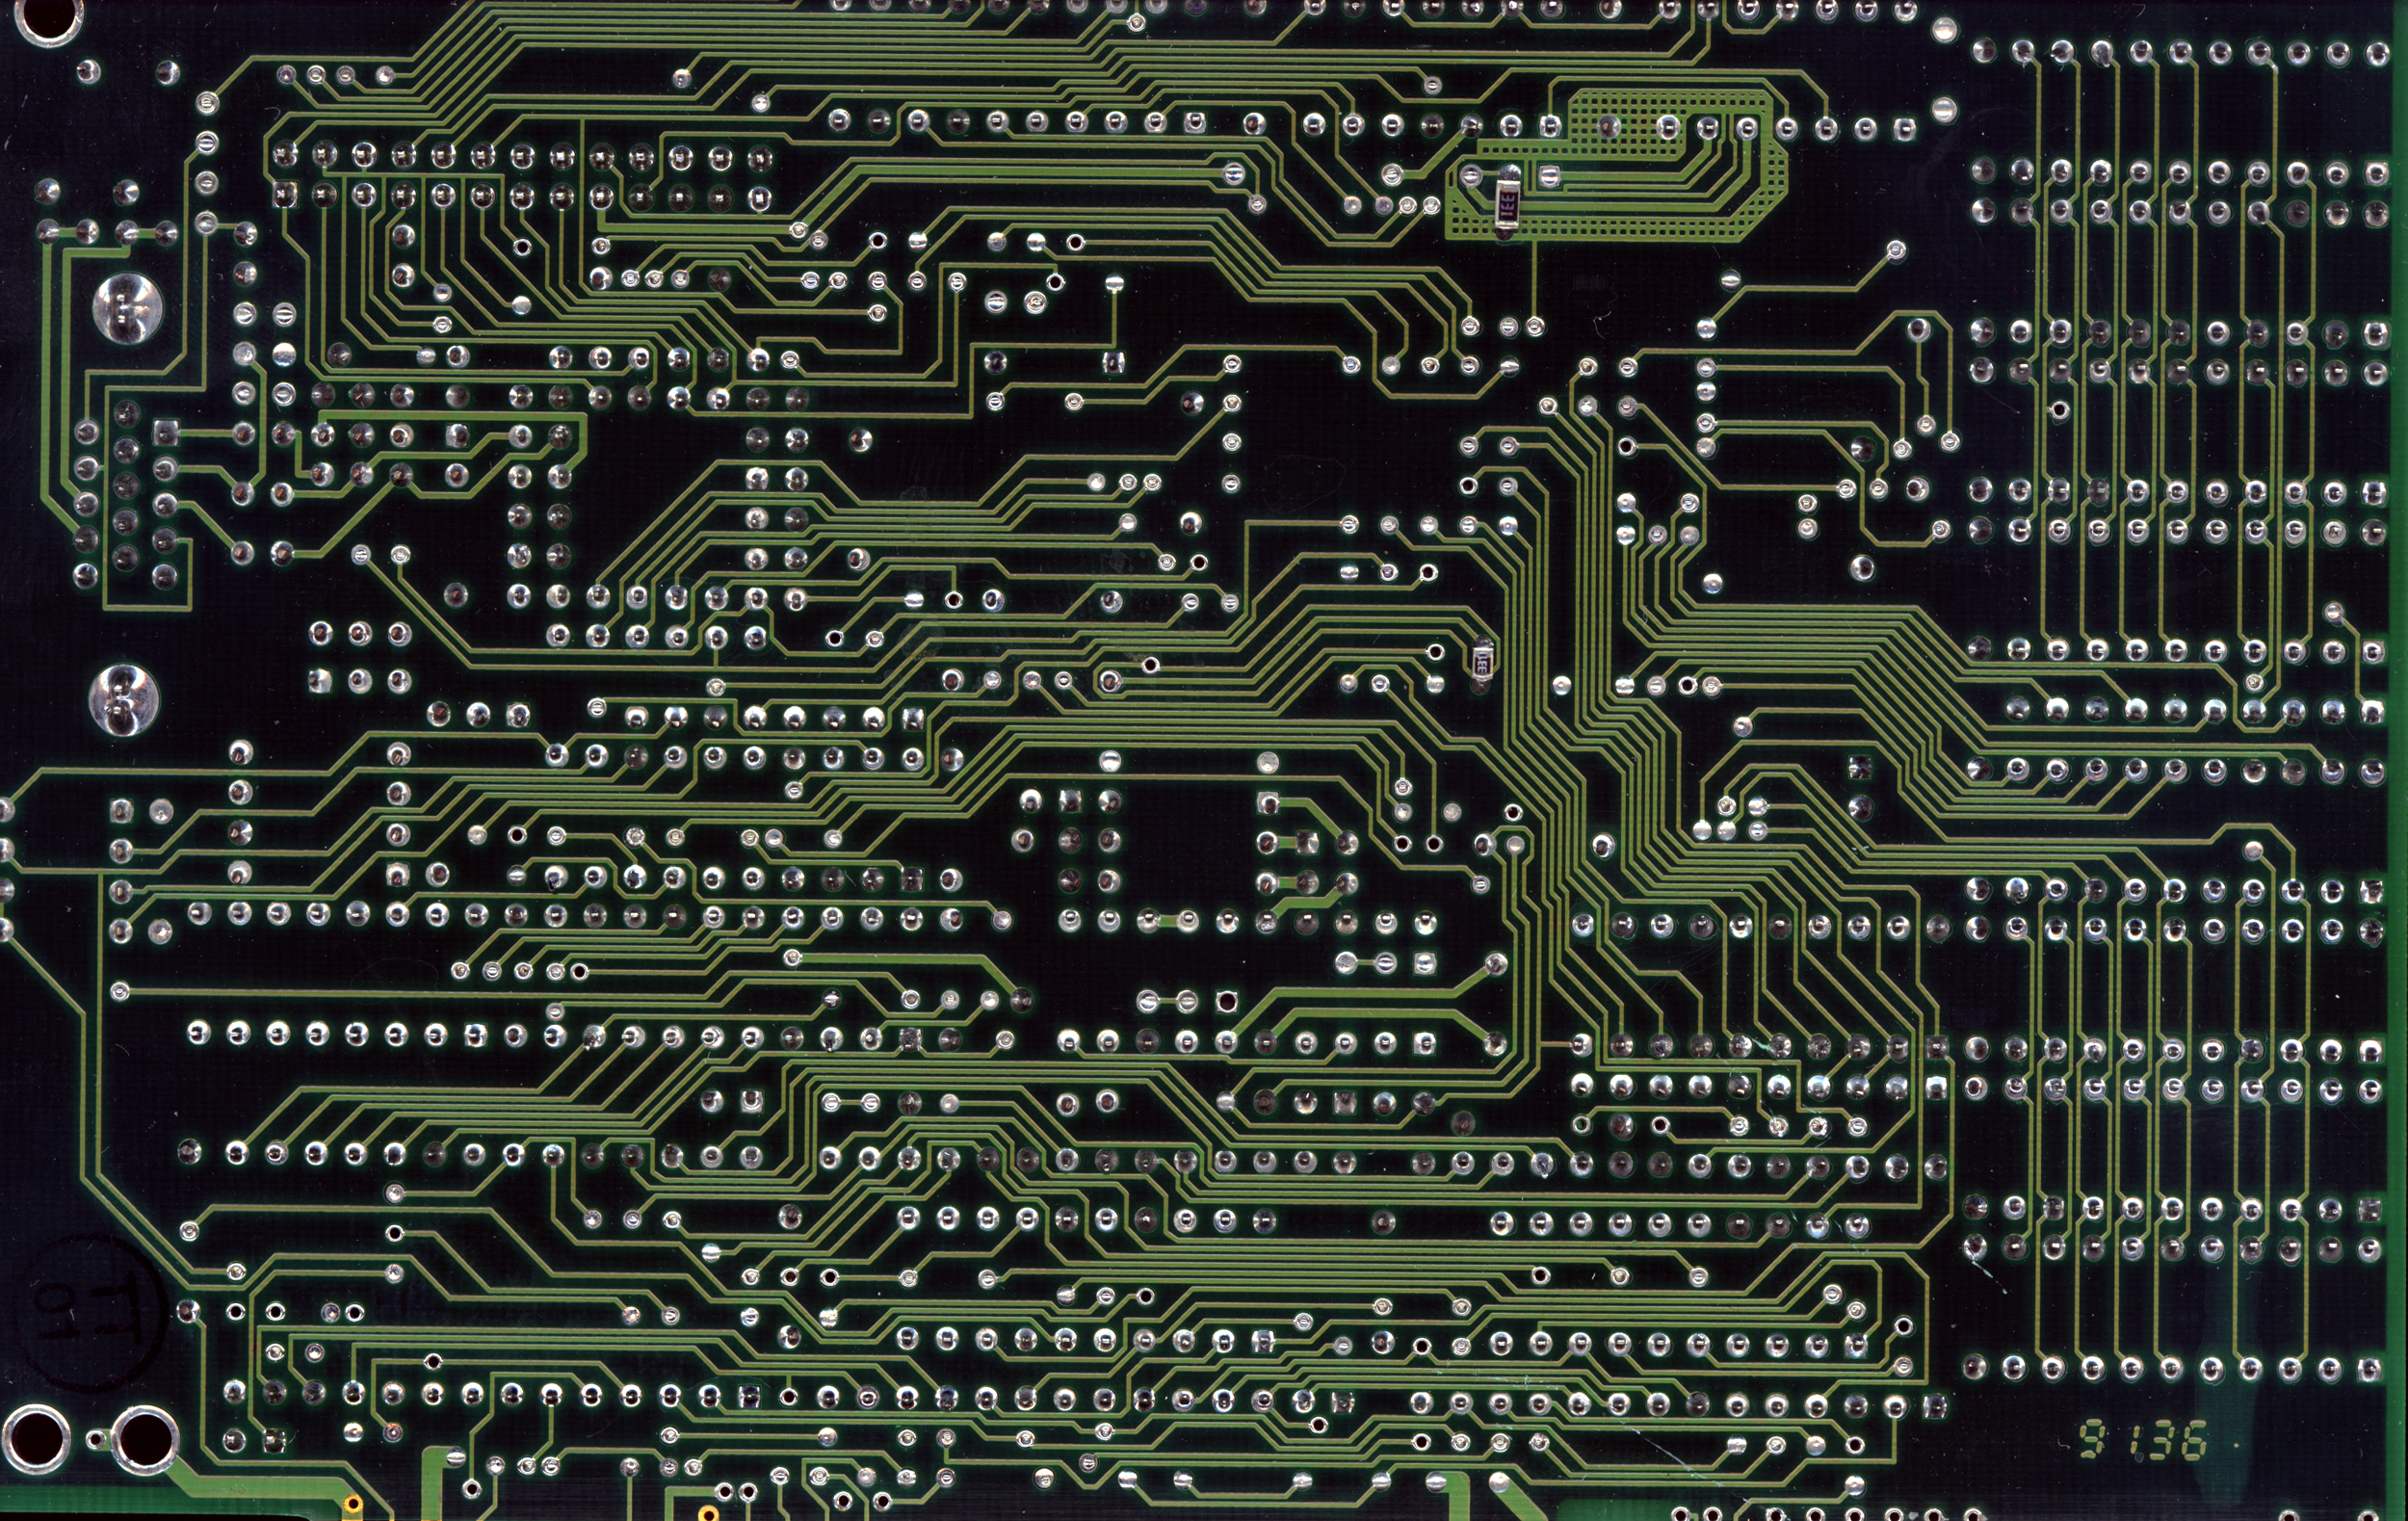 circuits, computers components - desktop wallpaper